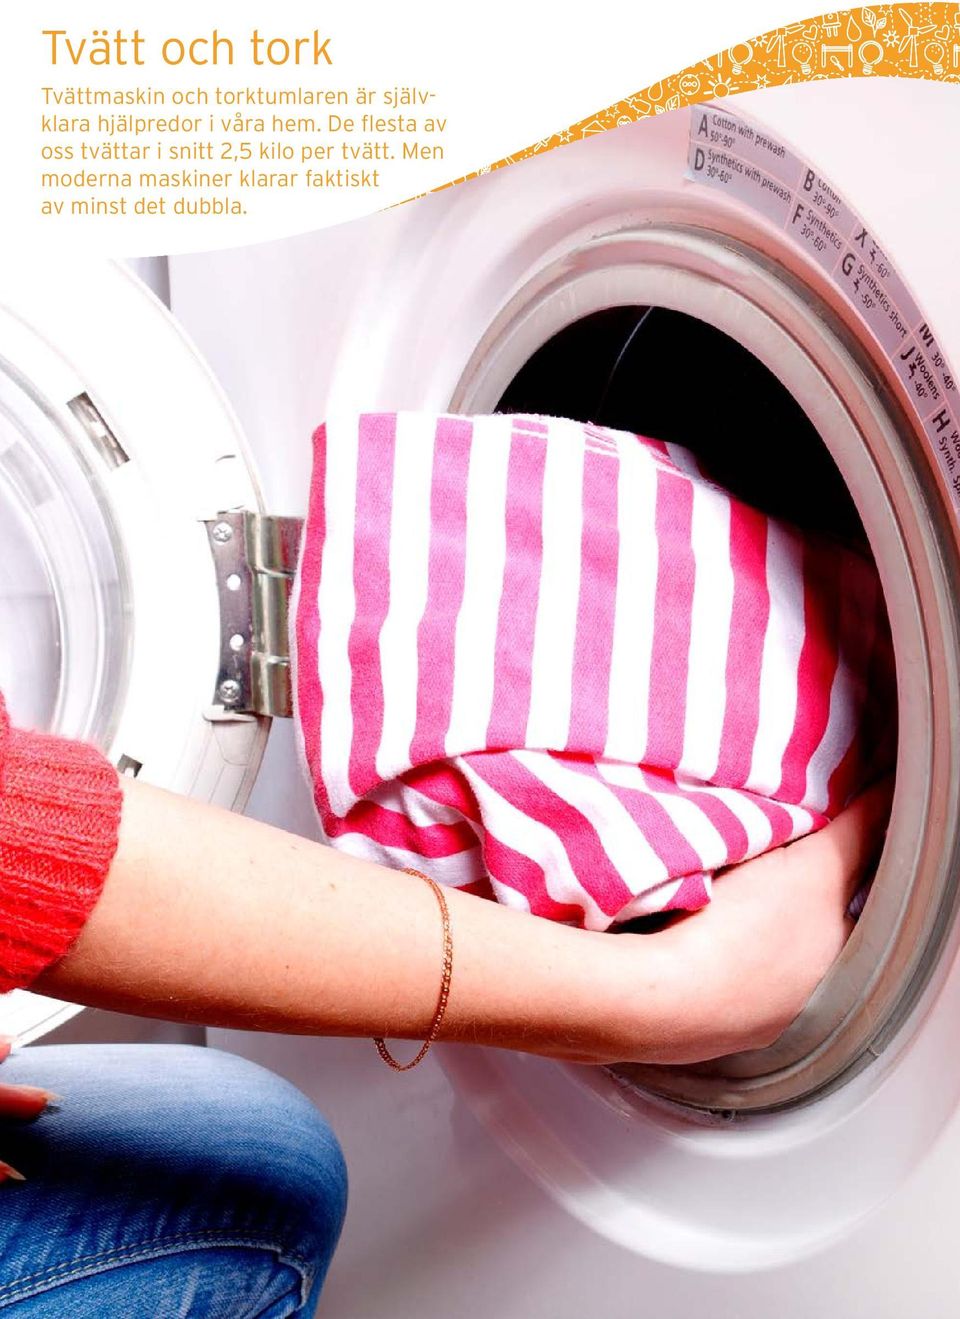 De flesta av oss tvättar i snitt 2,5 kilo per